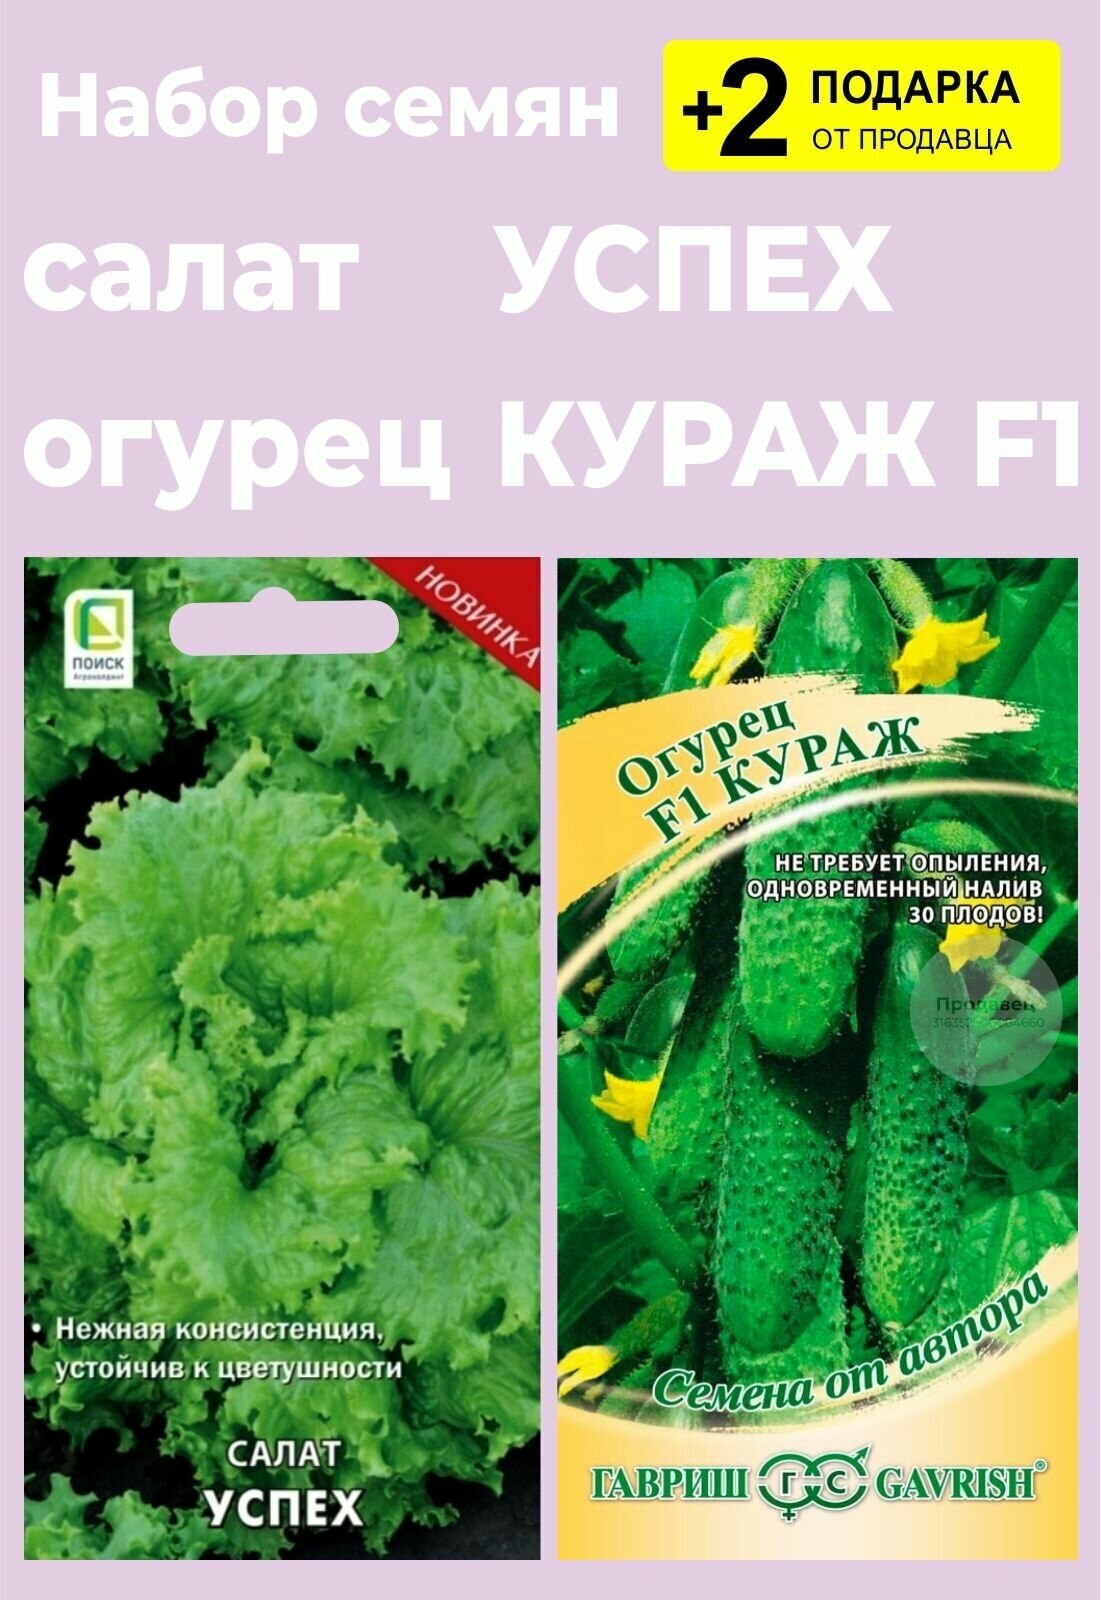 Набор семян: Салат "Успех" 1 гр. + Огурец "Кураж F1" + 2 Подарка